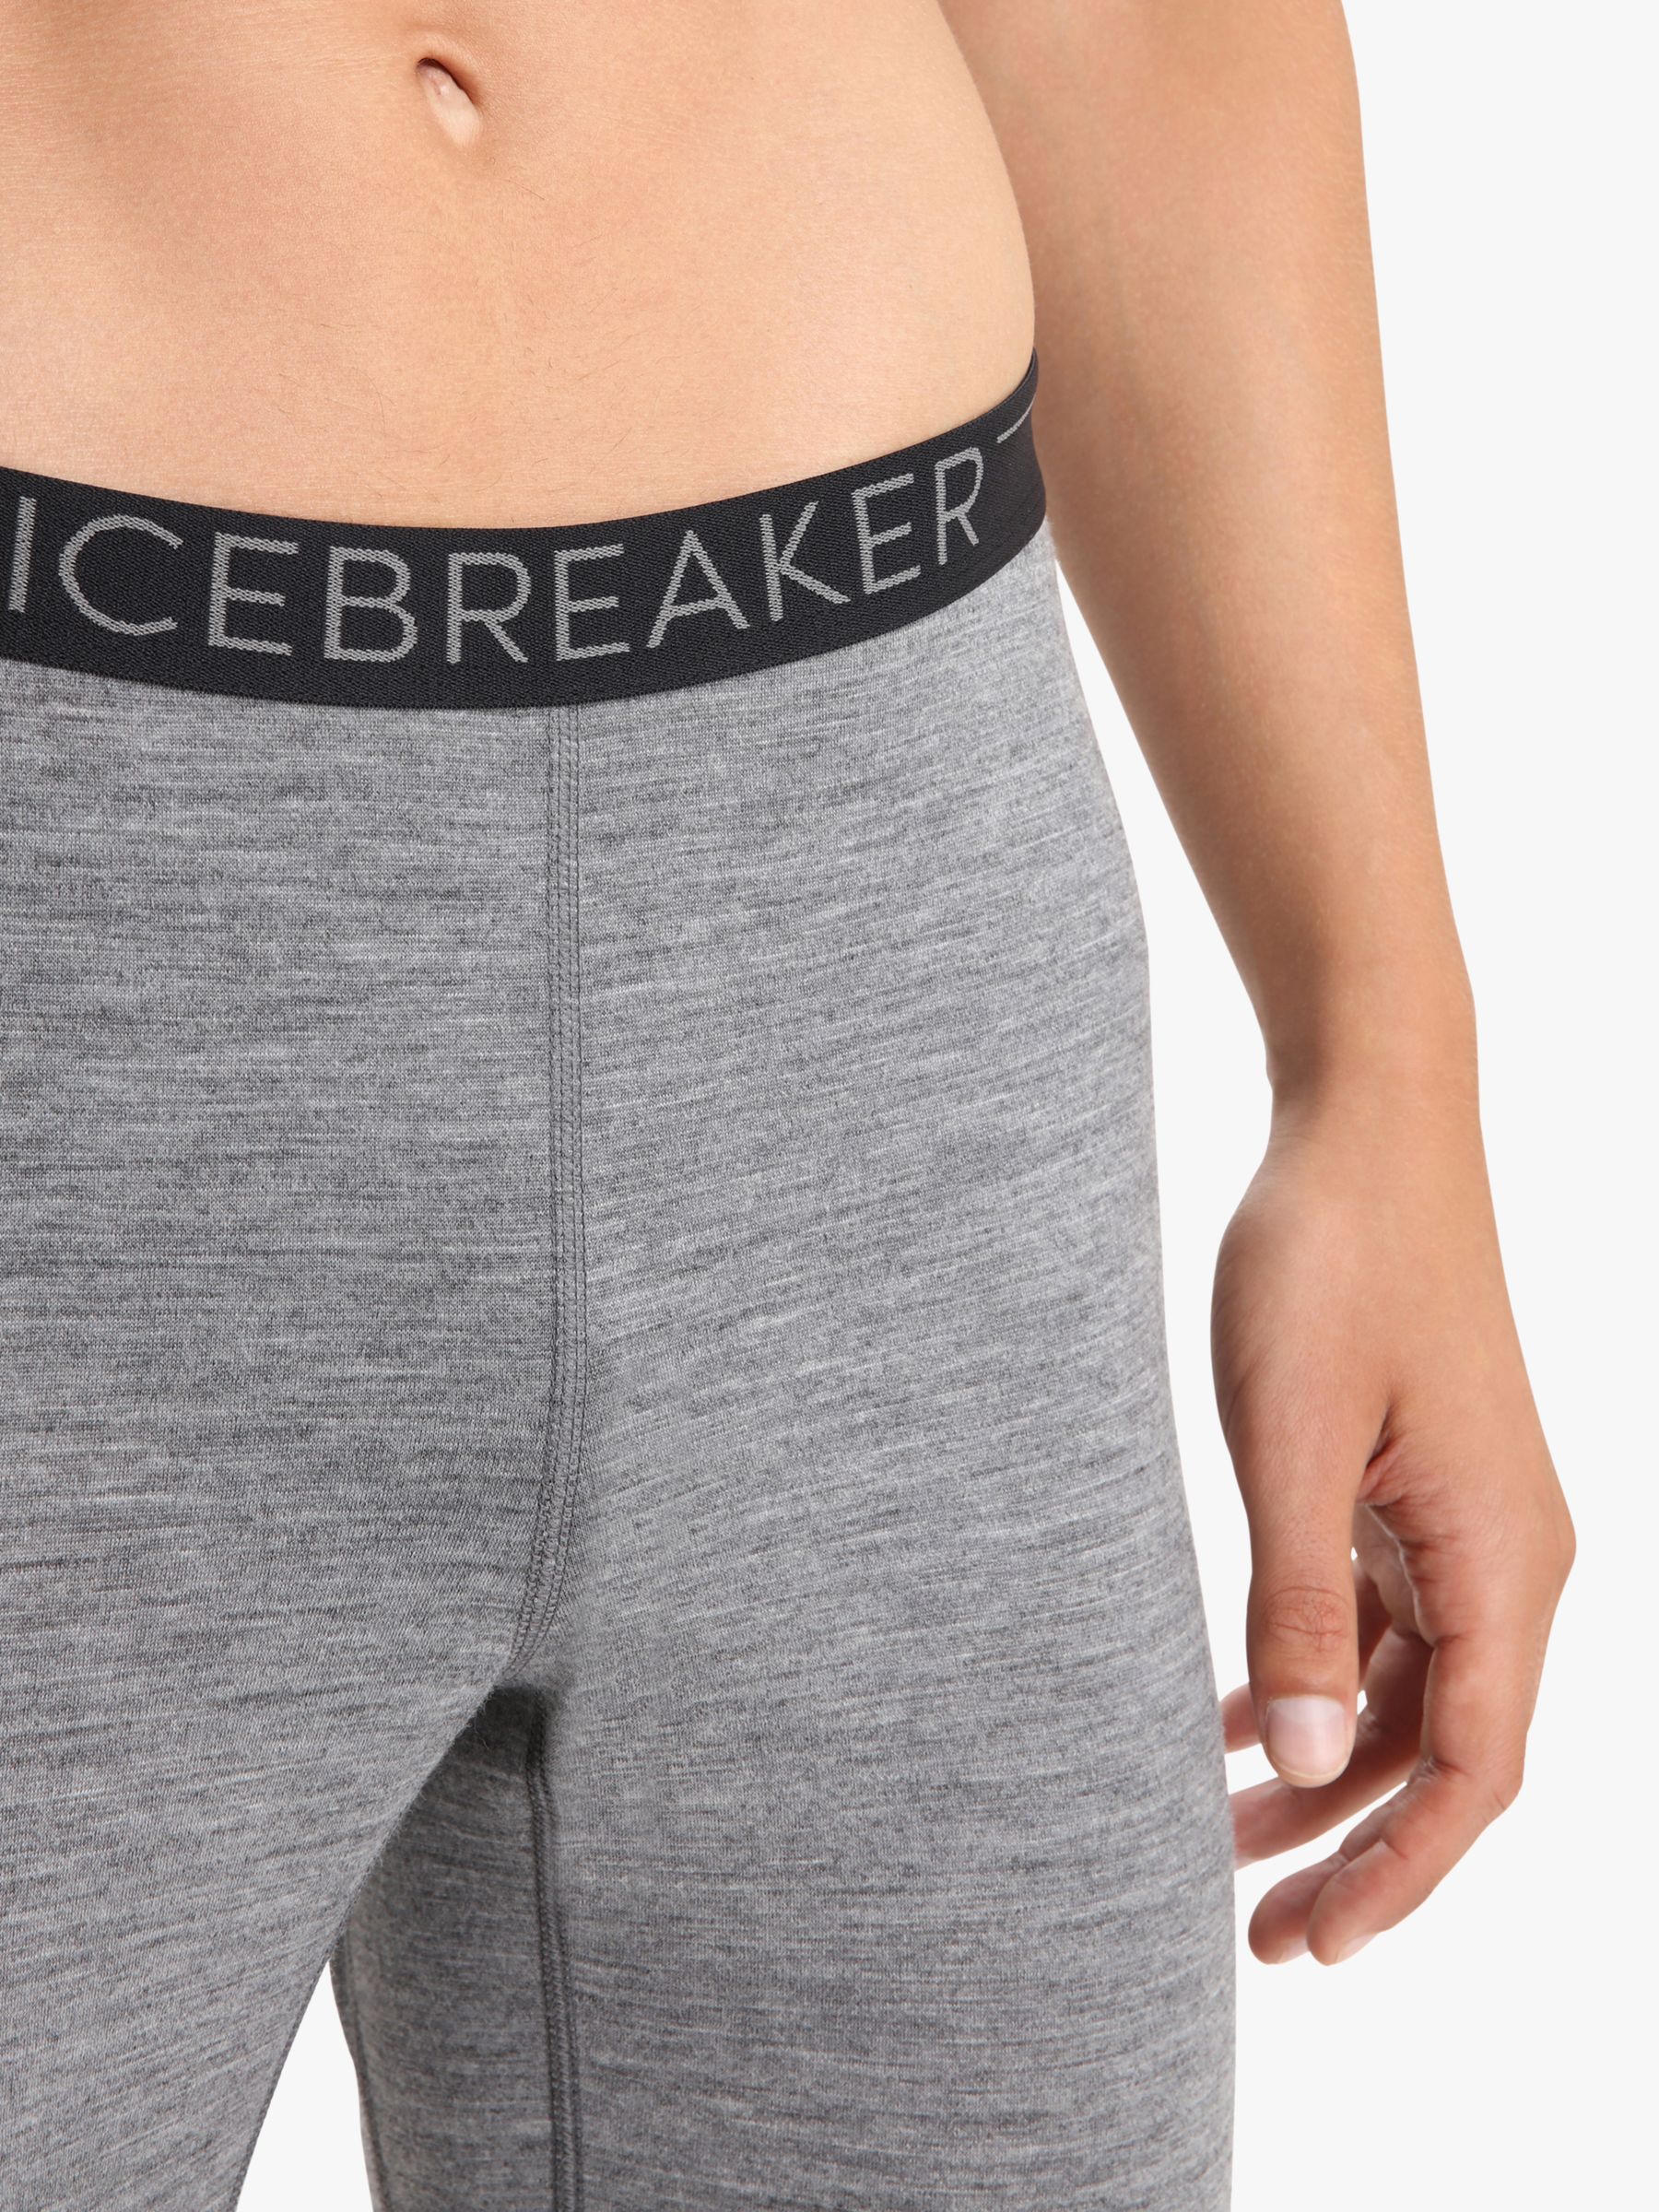 icebreaker 200 Oasis Boy shorts - Women's